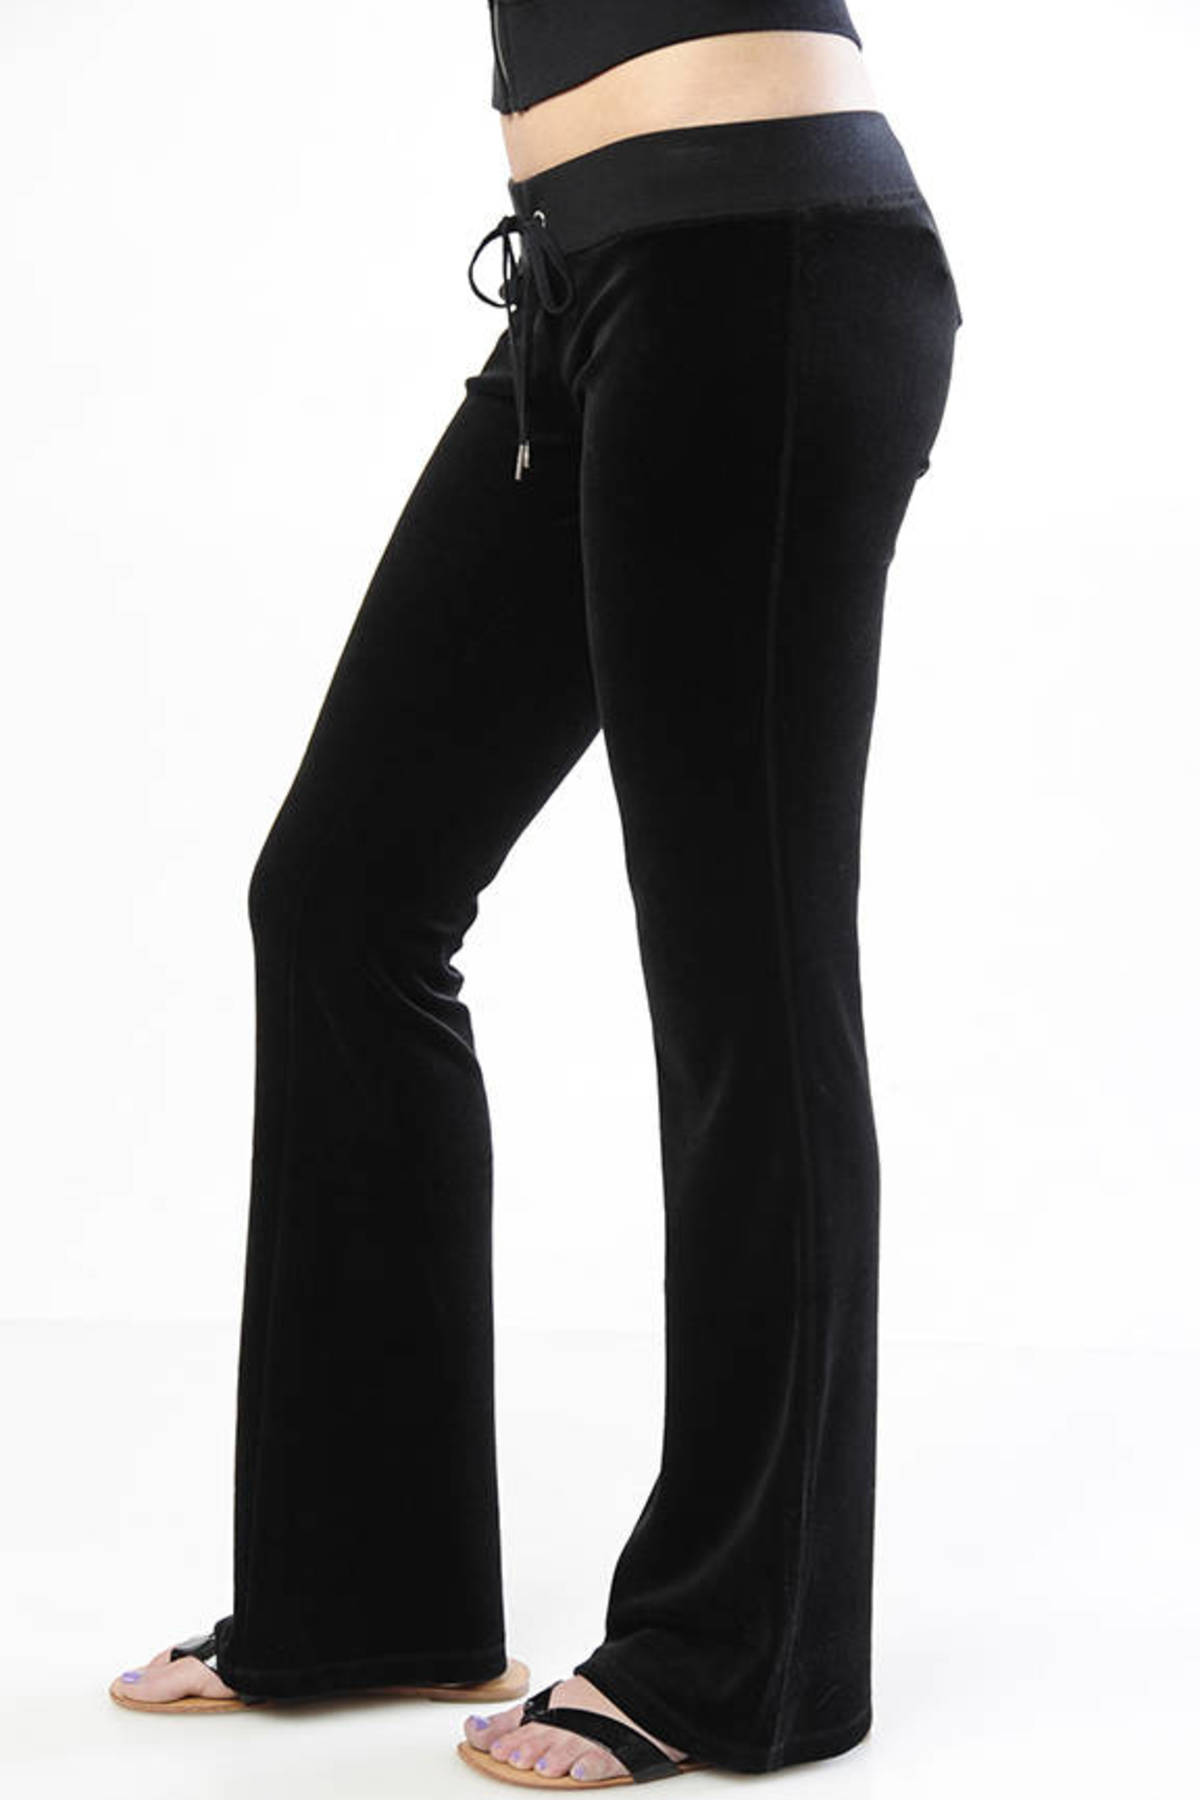 Velour Skinny Flare Leg Pants in Black - $35 | Tobi US